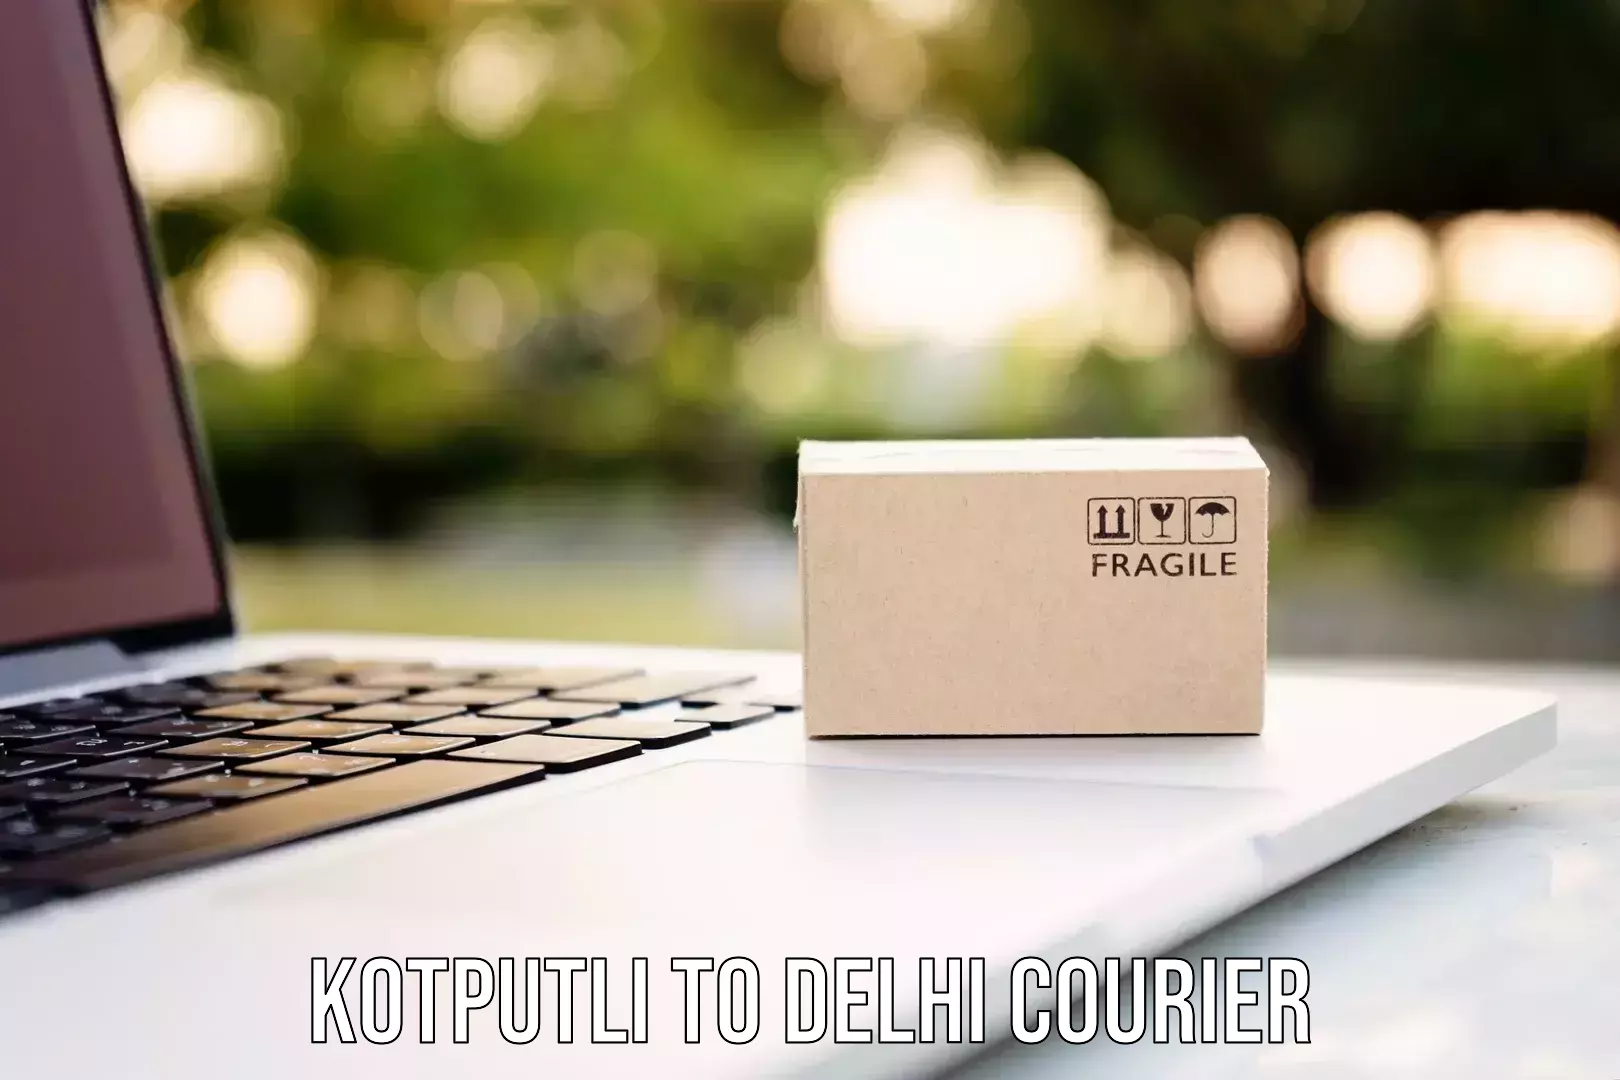 Courier tracking online Kotputli to Jamia Millia Islamia New Delhi